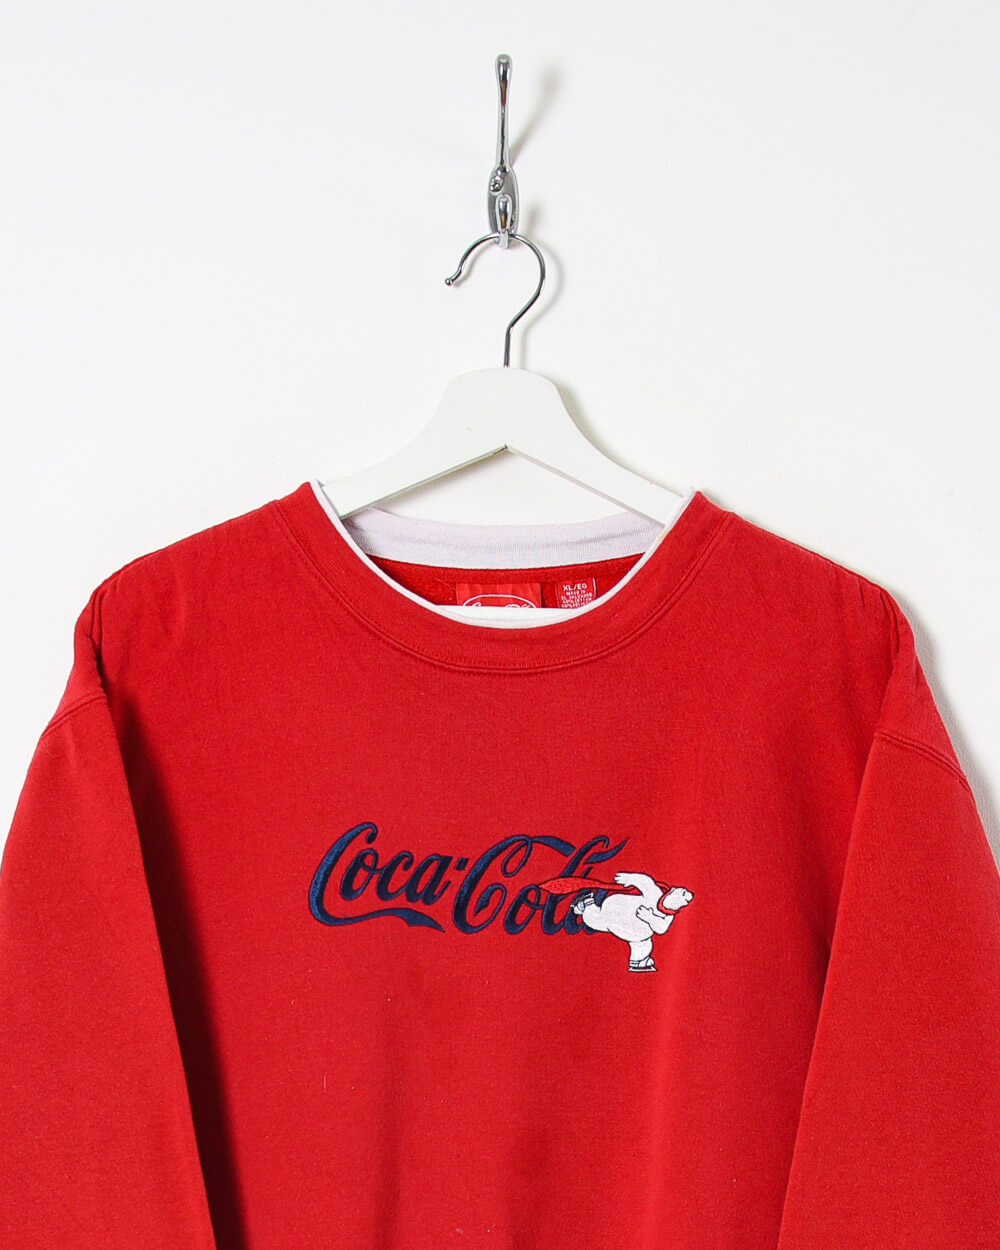 Coca Cola Sweatshirt - Medium - Domno Vintage 90s, 80s, 00s Retro and Vintage Clothing 